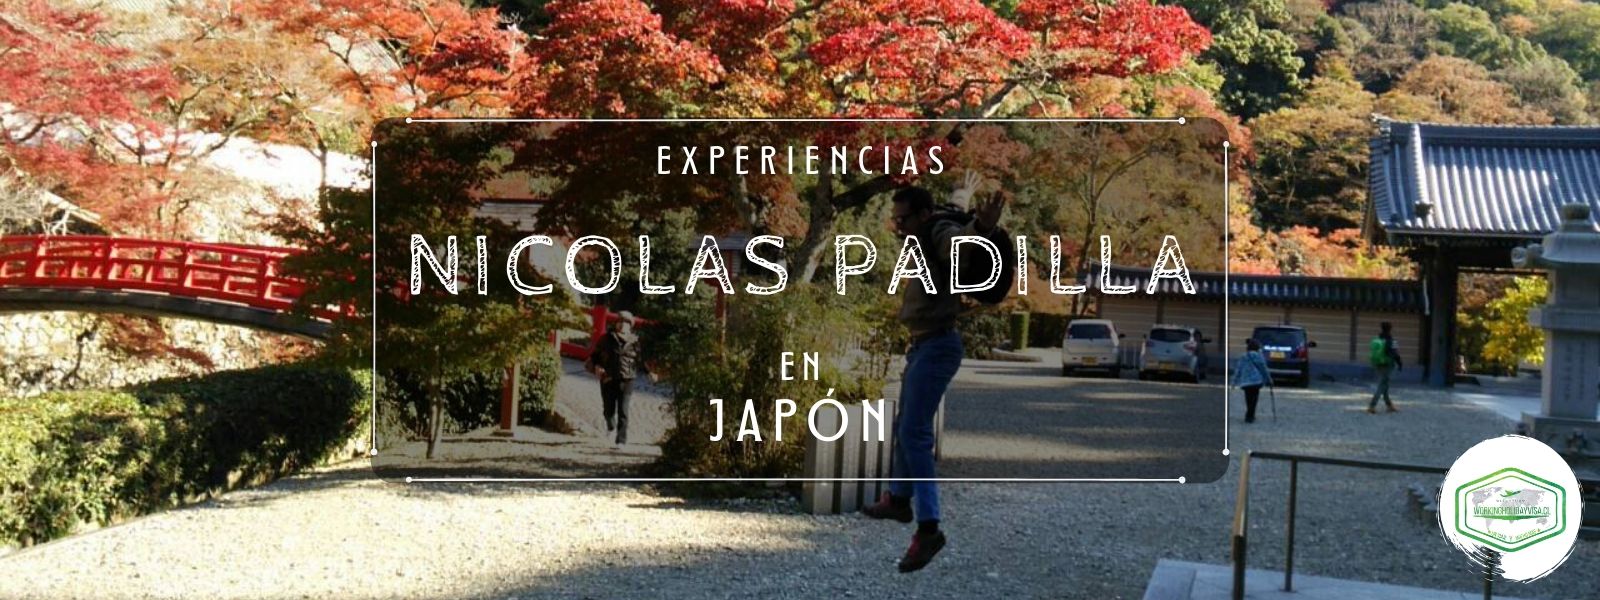 EXPERIENCIAS NICOLAS PADILLA